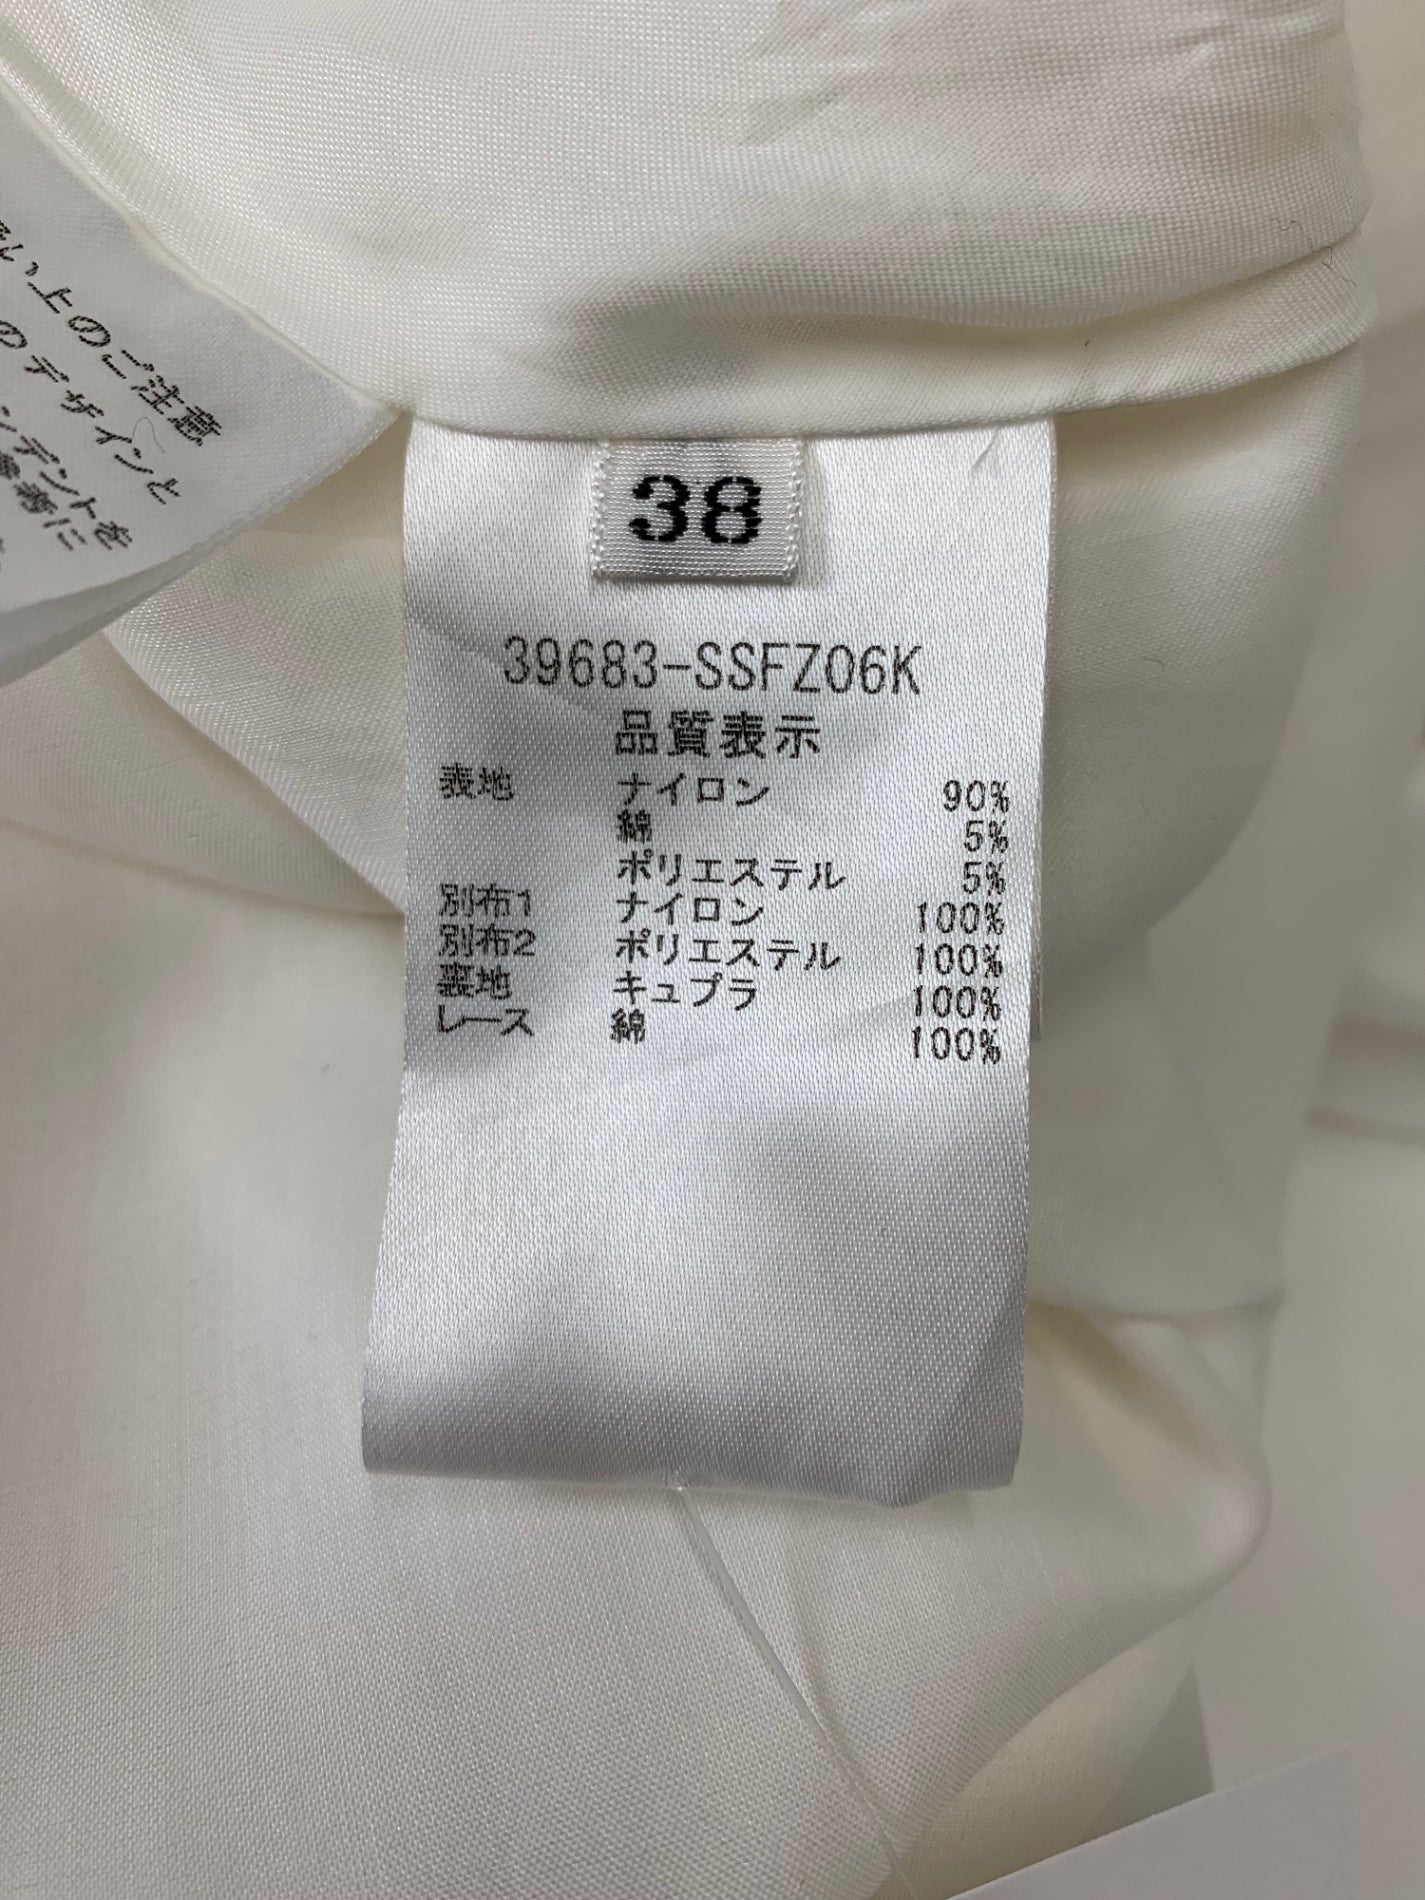 フォクシーブティック Skirt Manoir 39683 スカート 38 ホワイト フラワーモチーフ ITIVI1DA7VA1